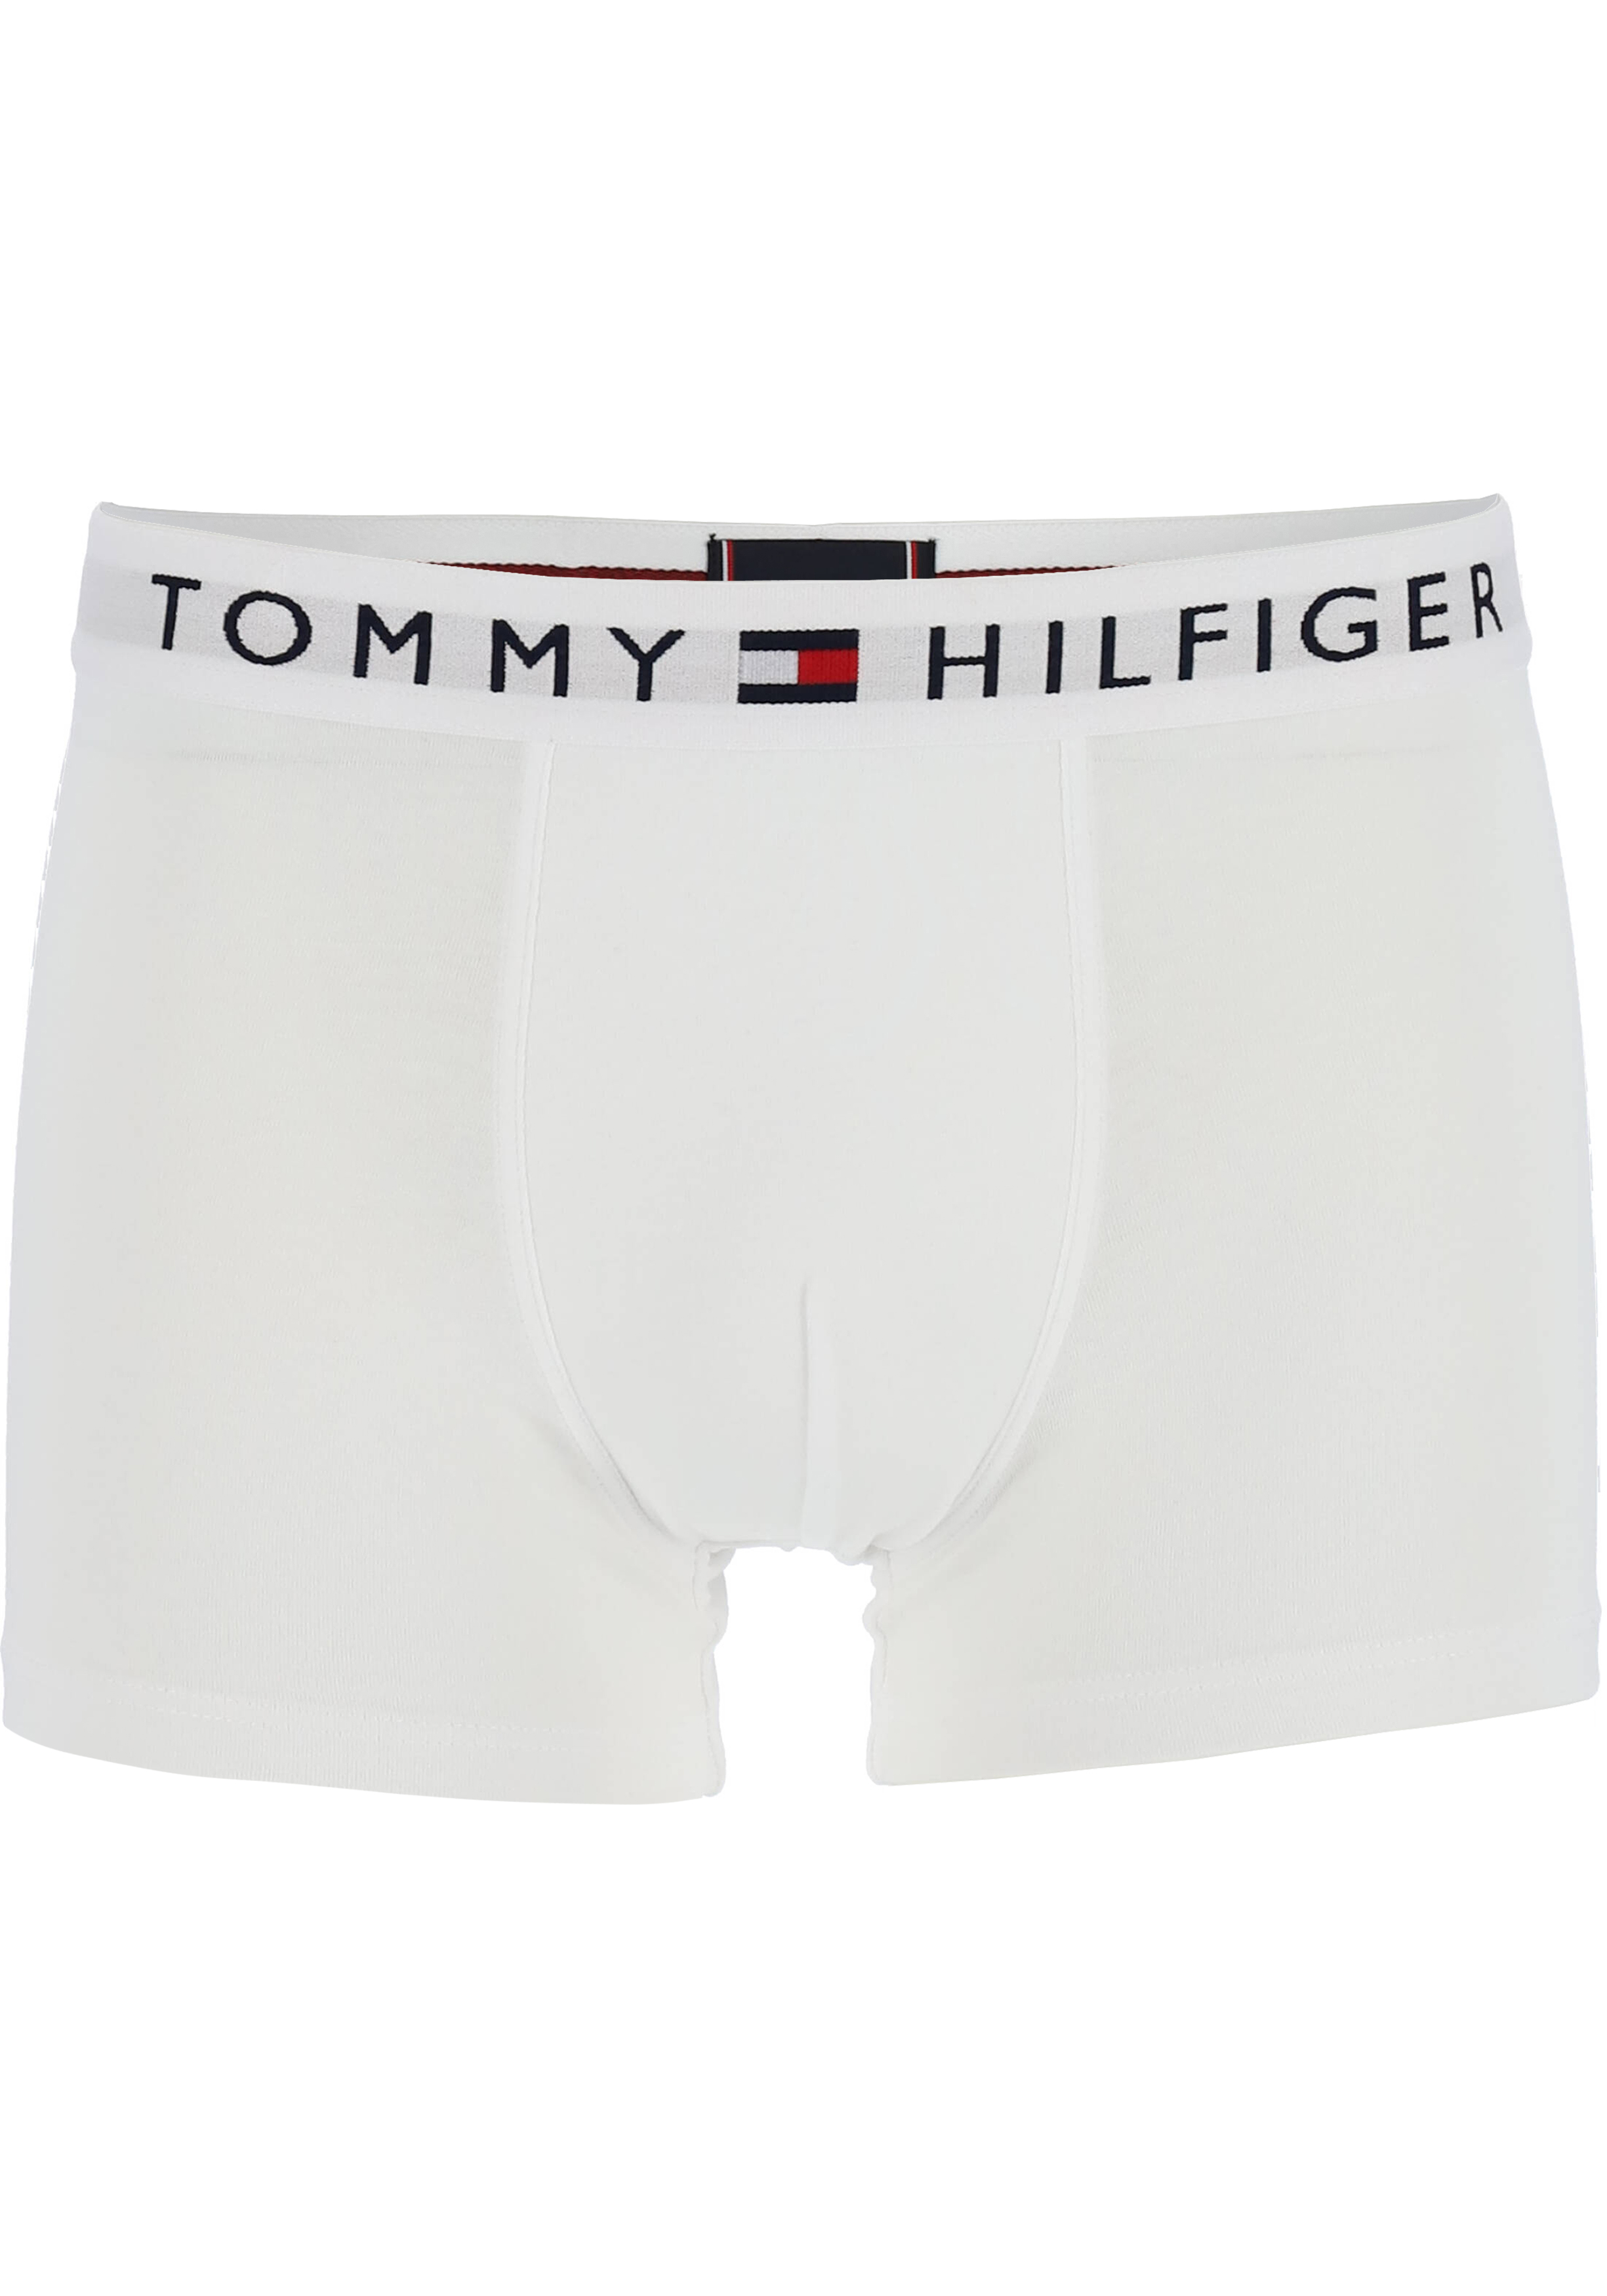 Stadscentrum zonsopkomst Lol Tommy Hilfiger Tommy Original trunk (1-pack), heren boxer normale... -  Zomer SALE tot 50% korting